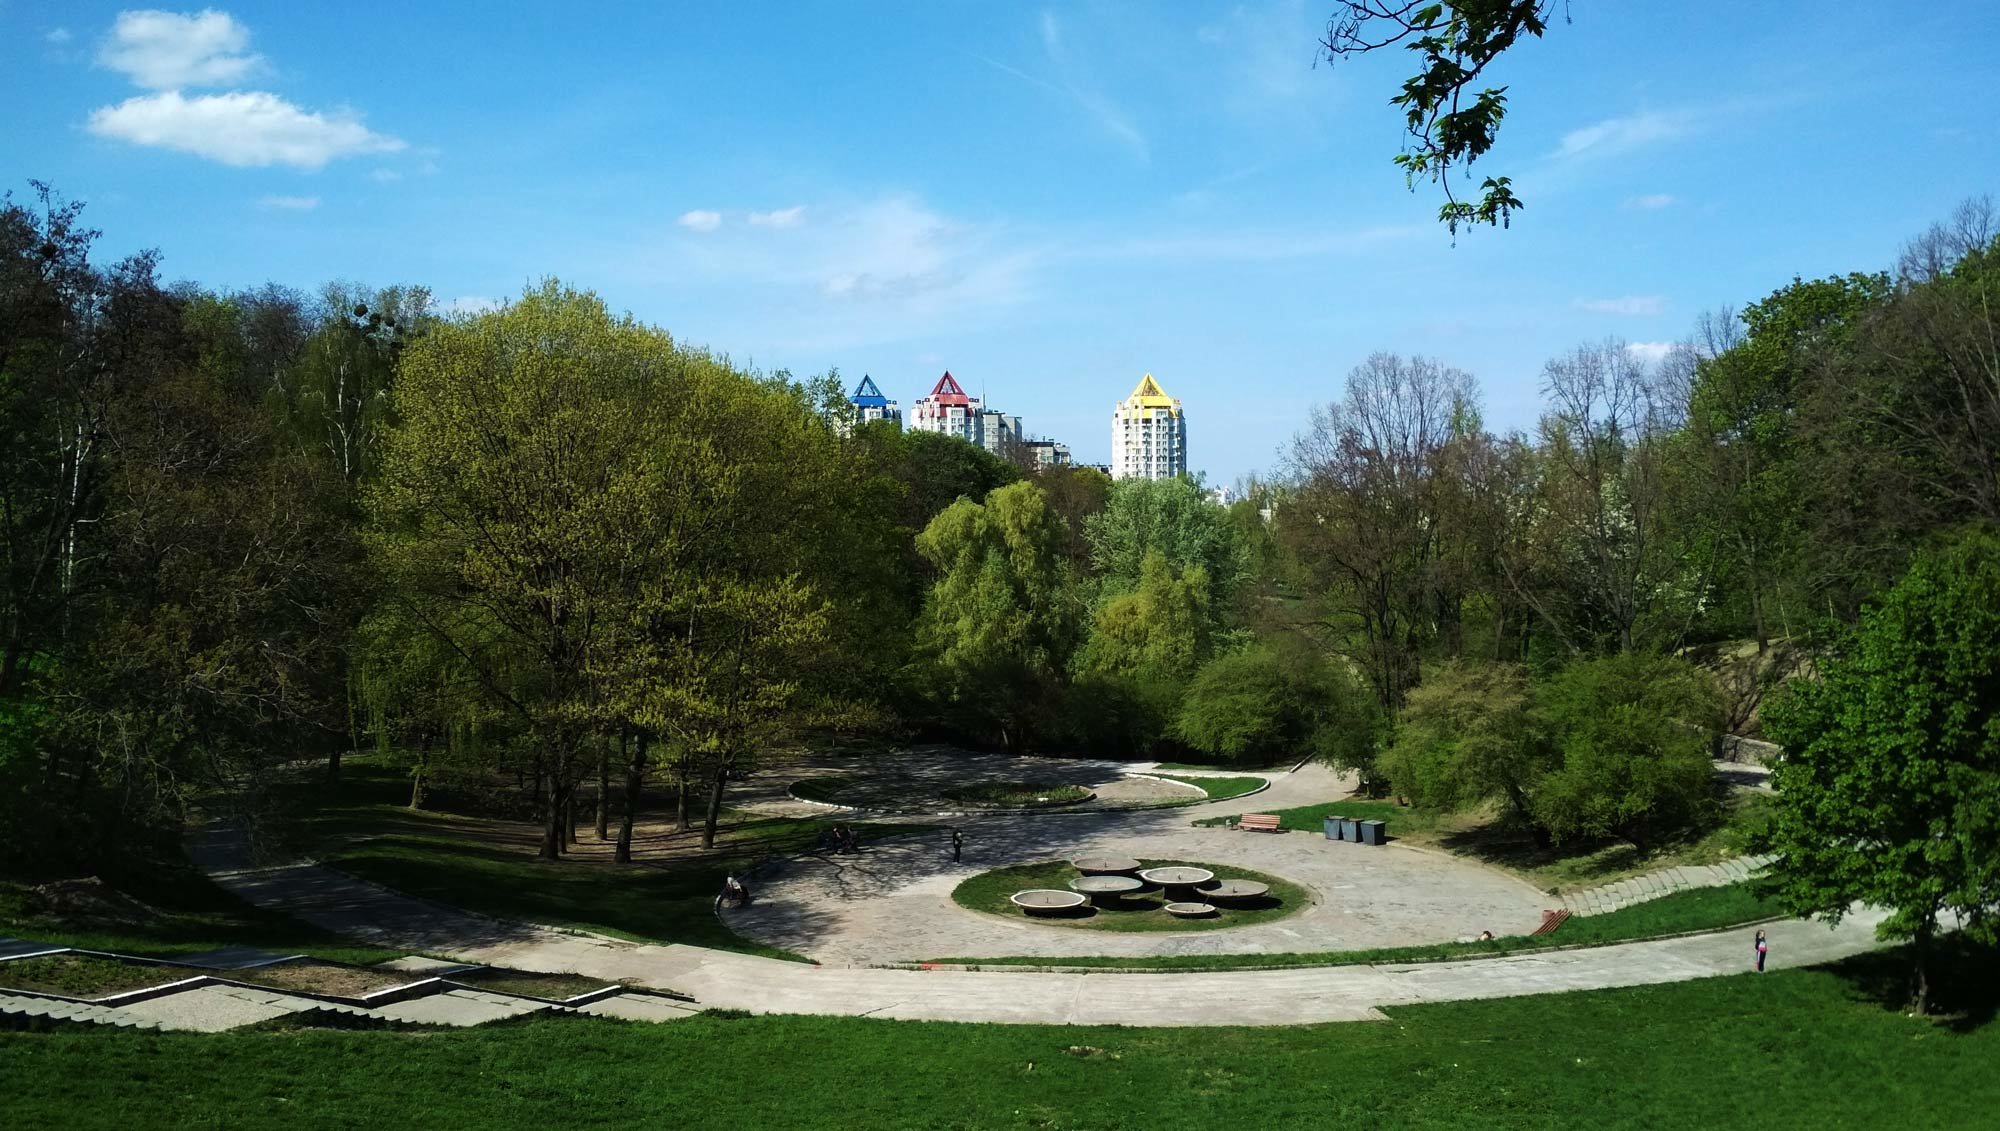 Начата реконструкция ландшафтного парка в Соломенском районе Киева